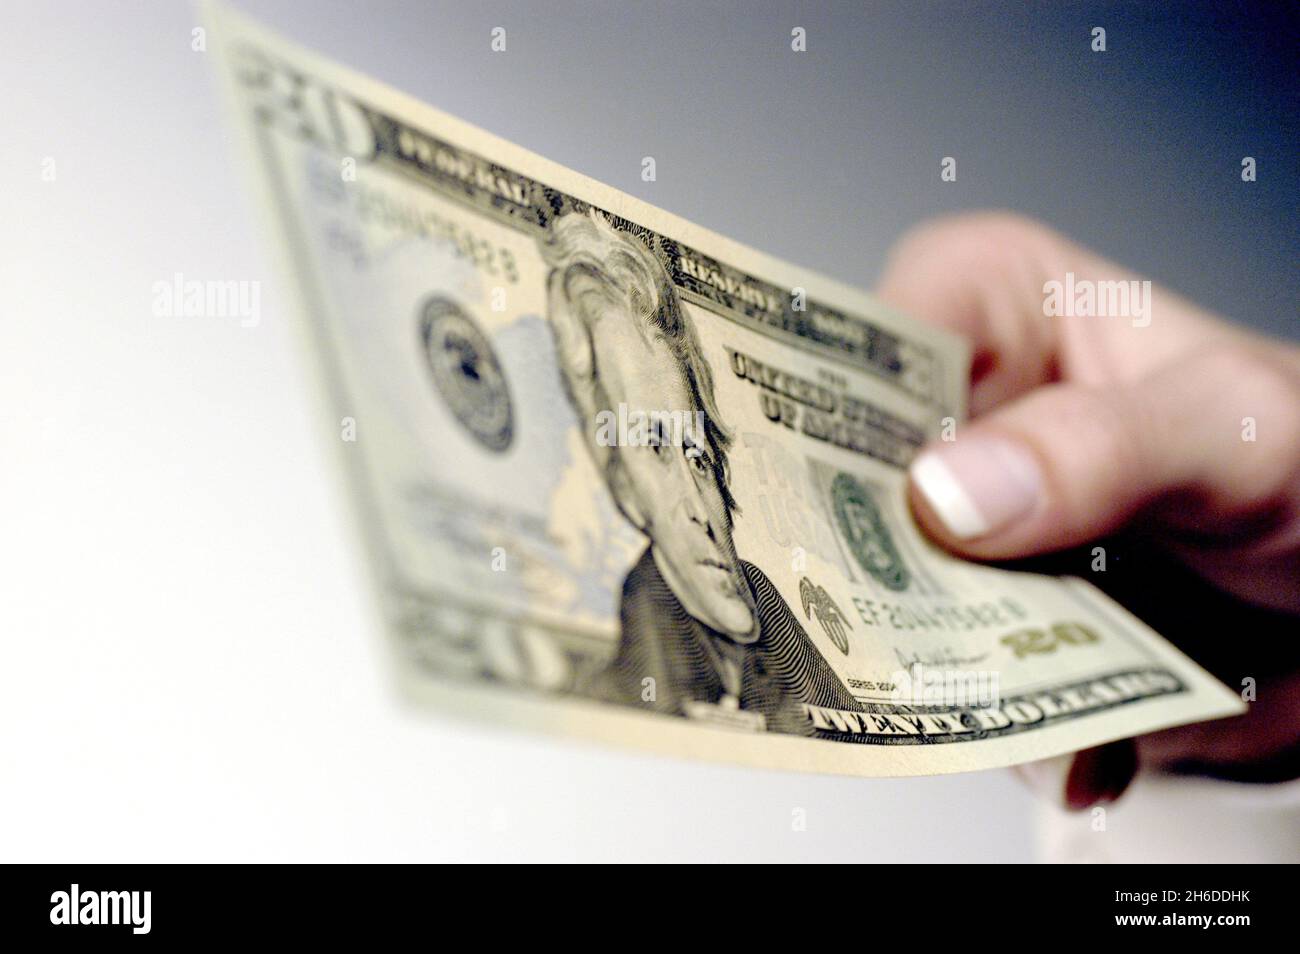 20 dollar bill in a hand, USA Stock Photo